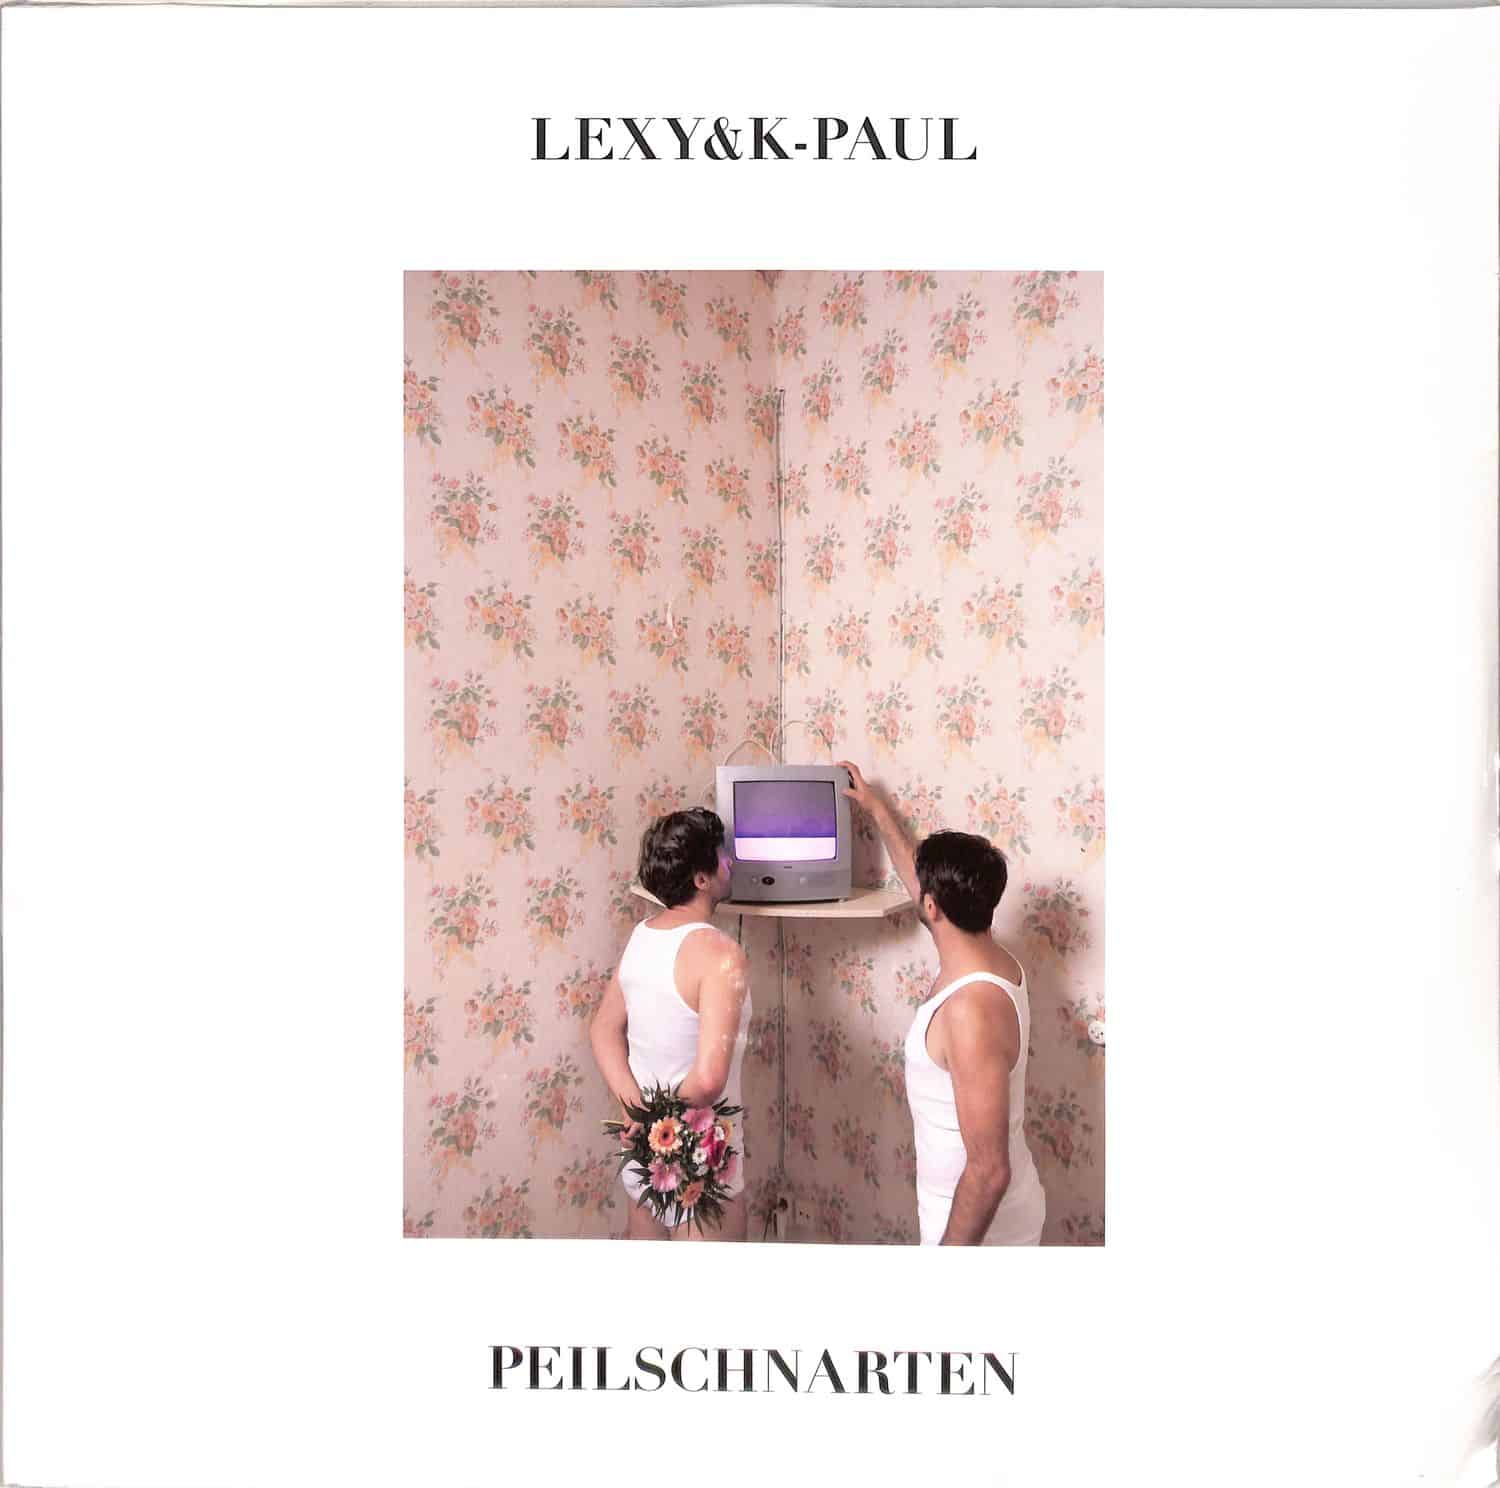 Lexy & K-Paul - PEILSCHNARTEN 